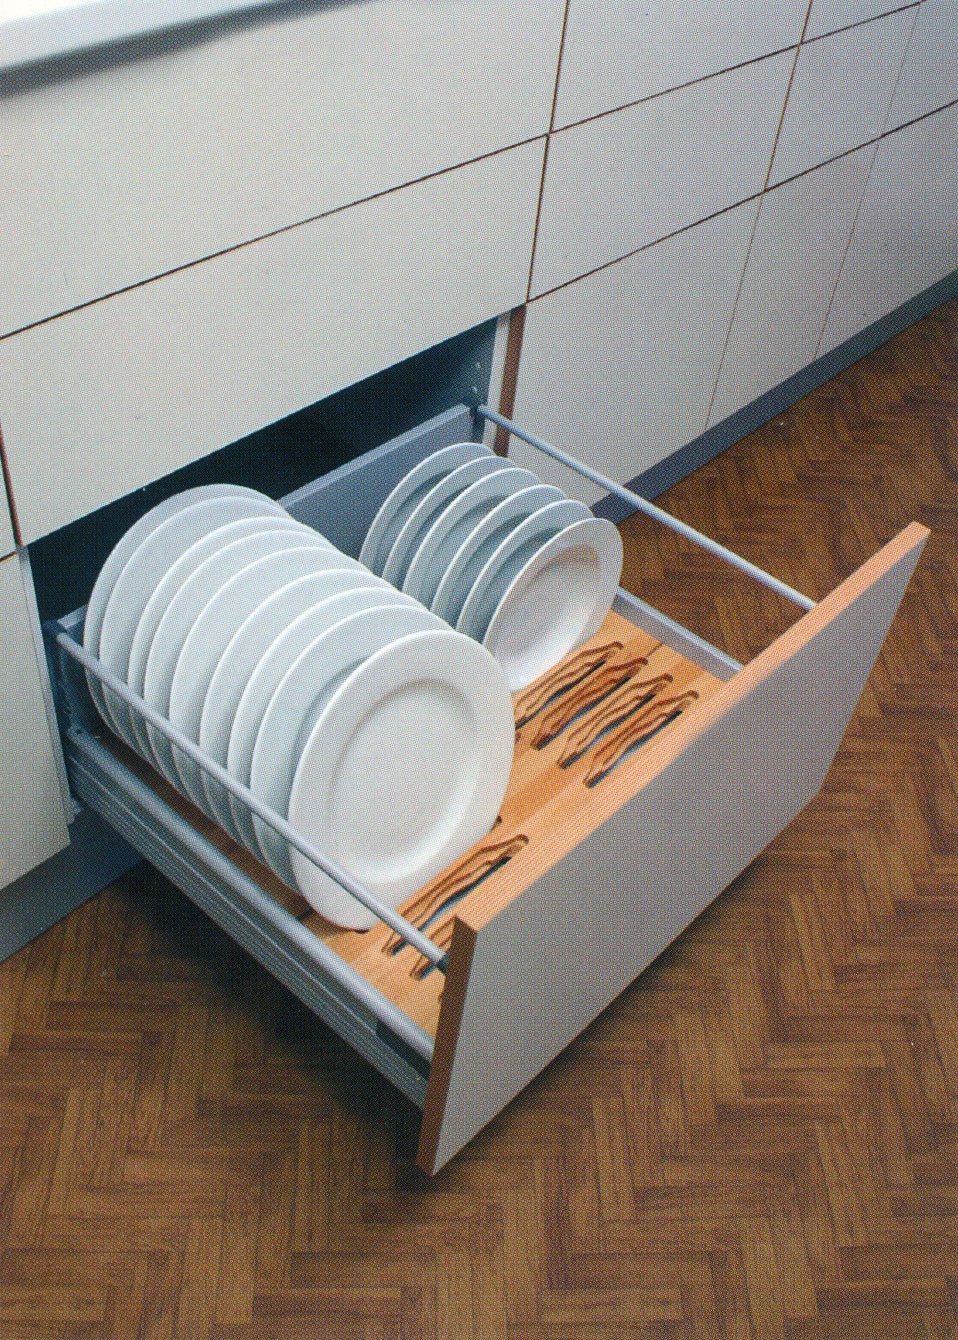 сушилка для посуды в нижний шкаф 80 см с доводчиком